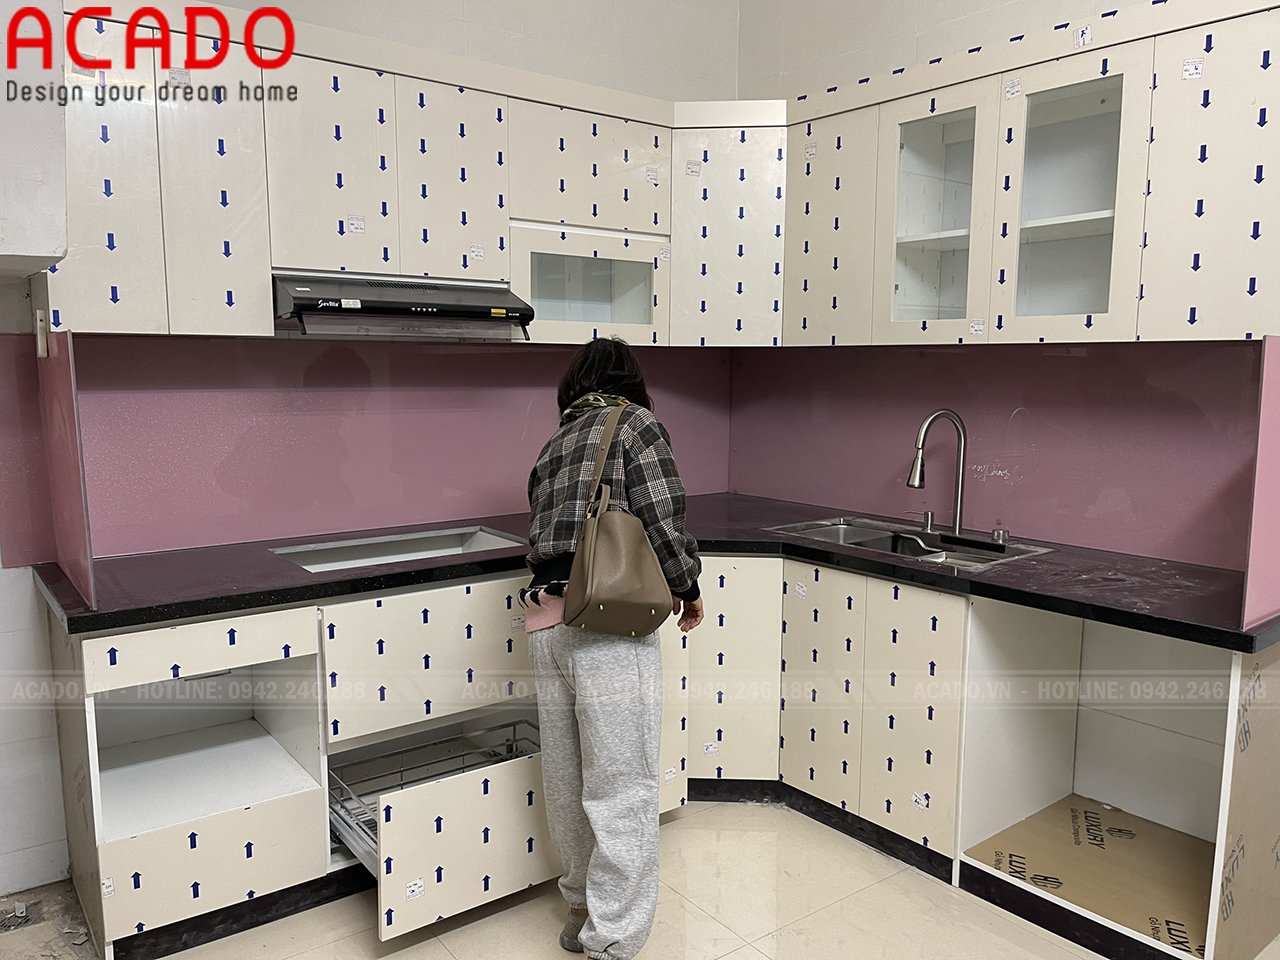 Nội thất ACADO đơn vị chuyên thi công tủ bếp tại Hà Nội